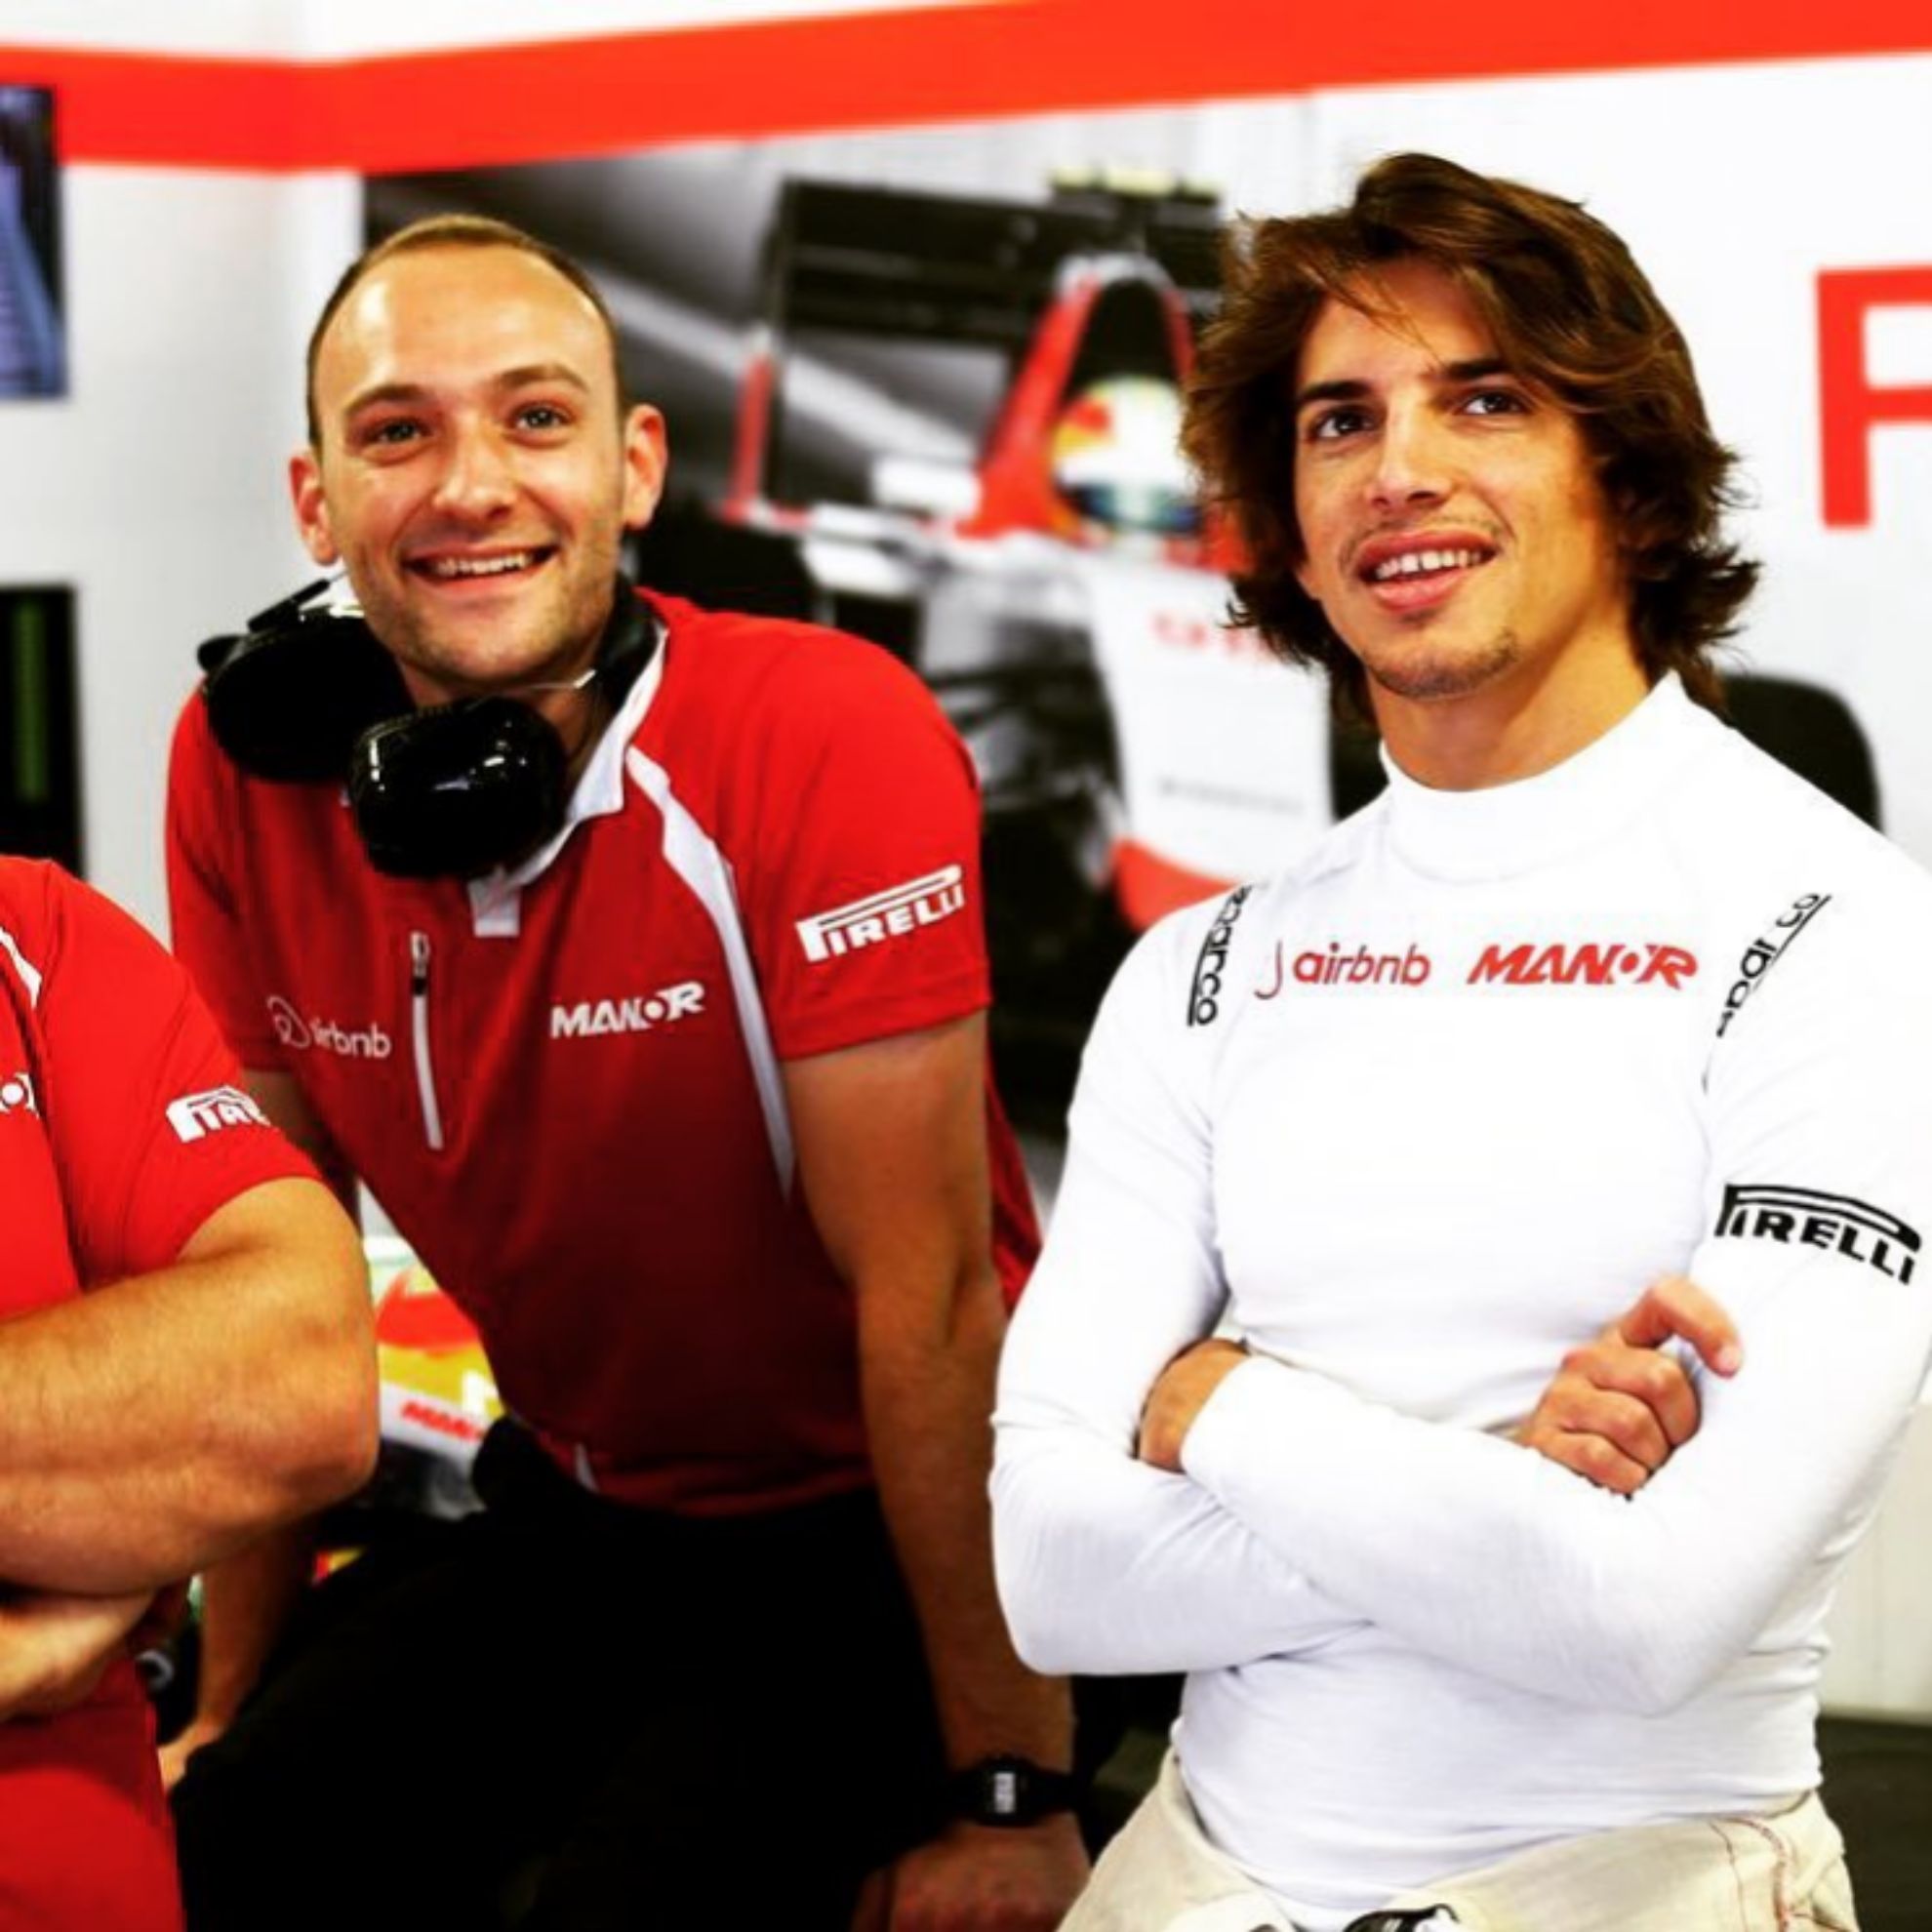 Desde Merhi en 2015, nadie ha acompaado a Sainz y Alonso en Frmula 1.